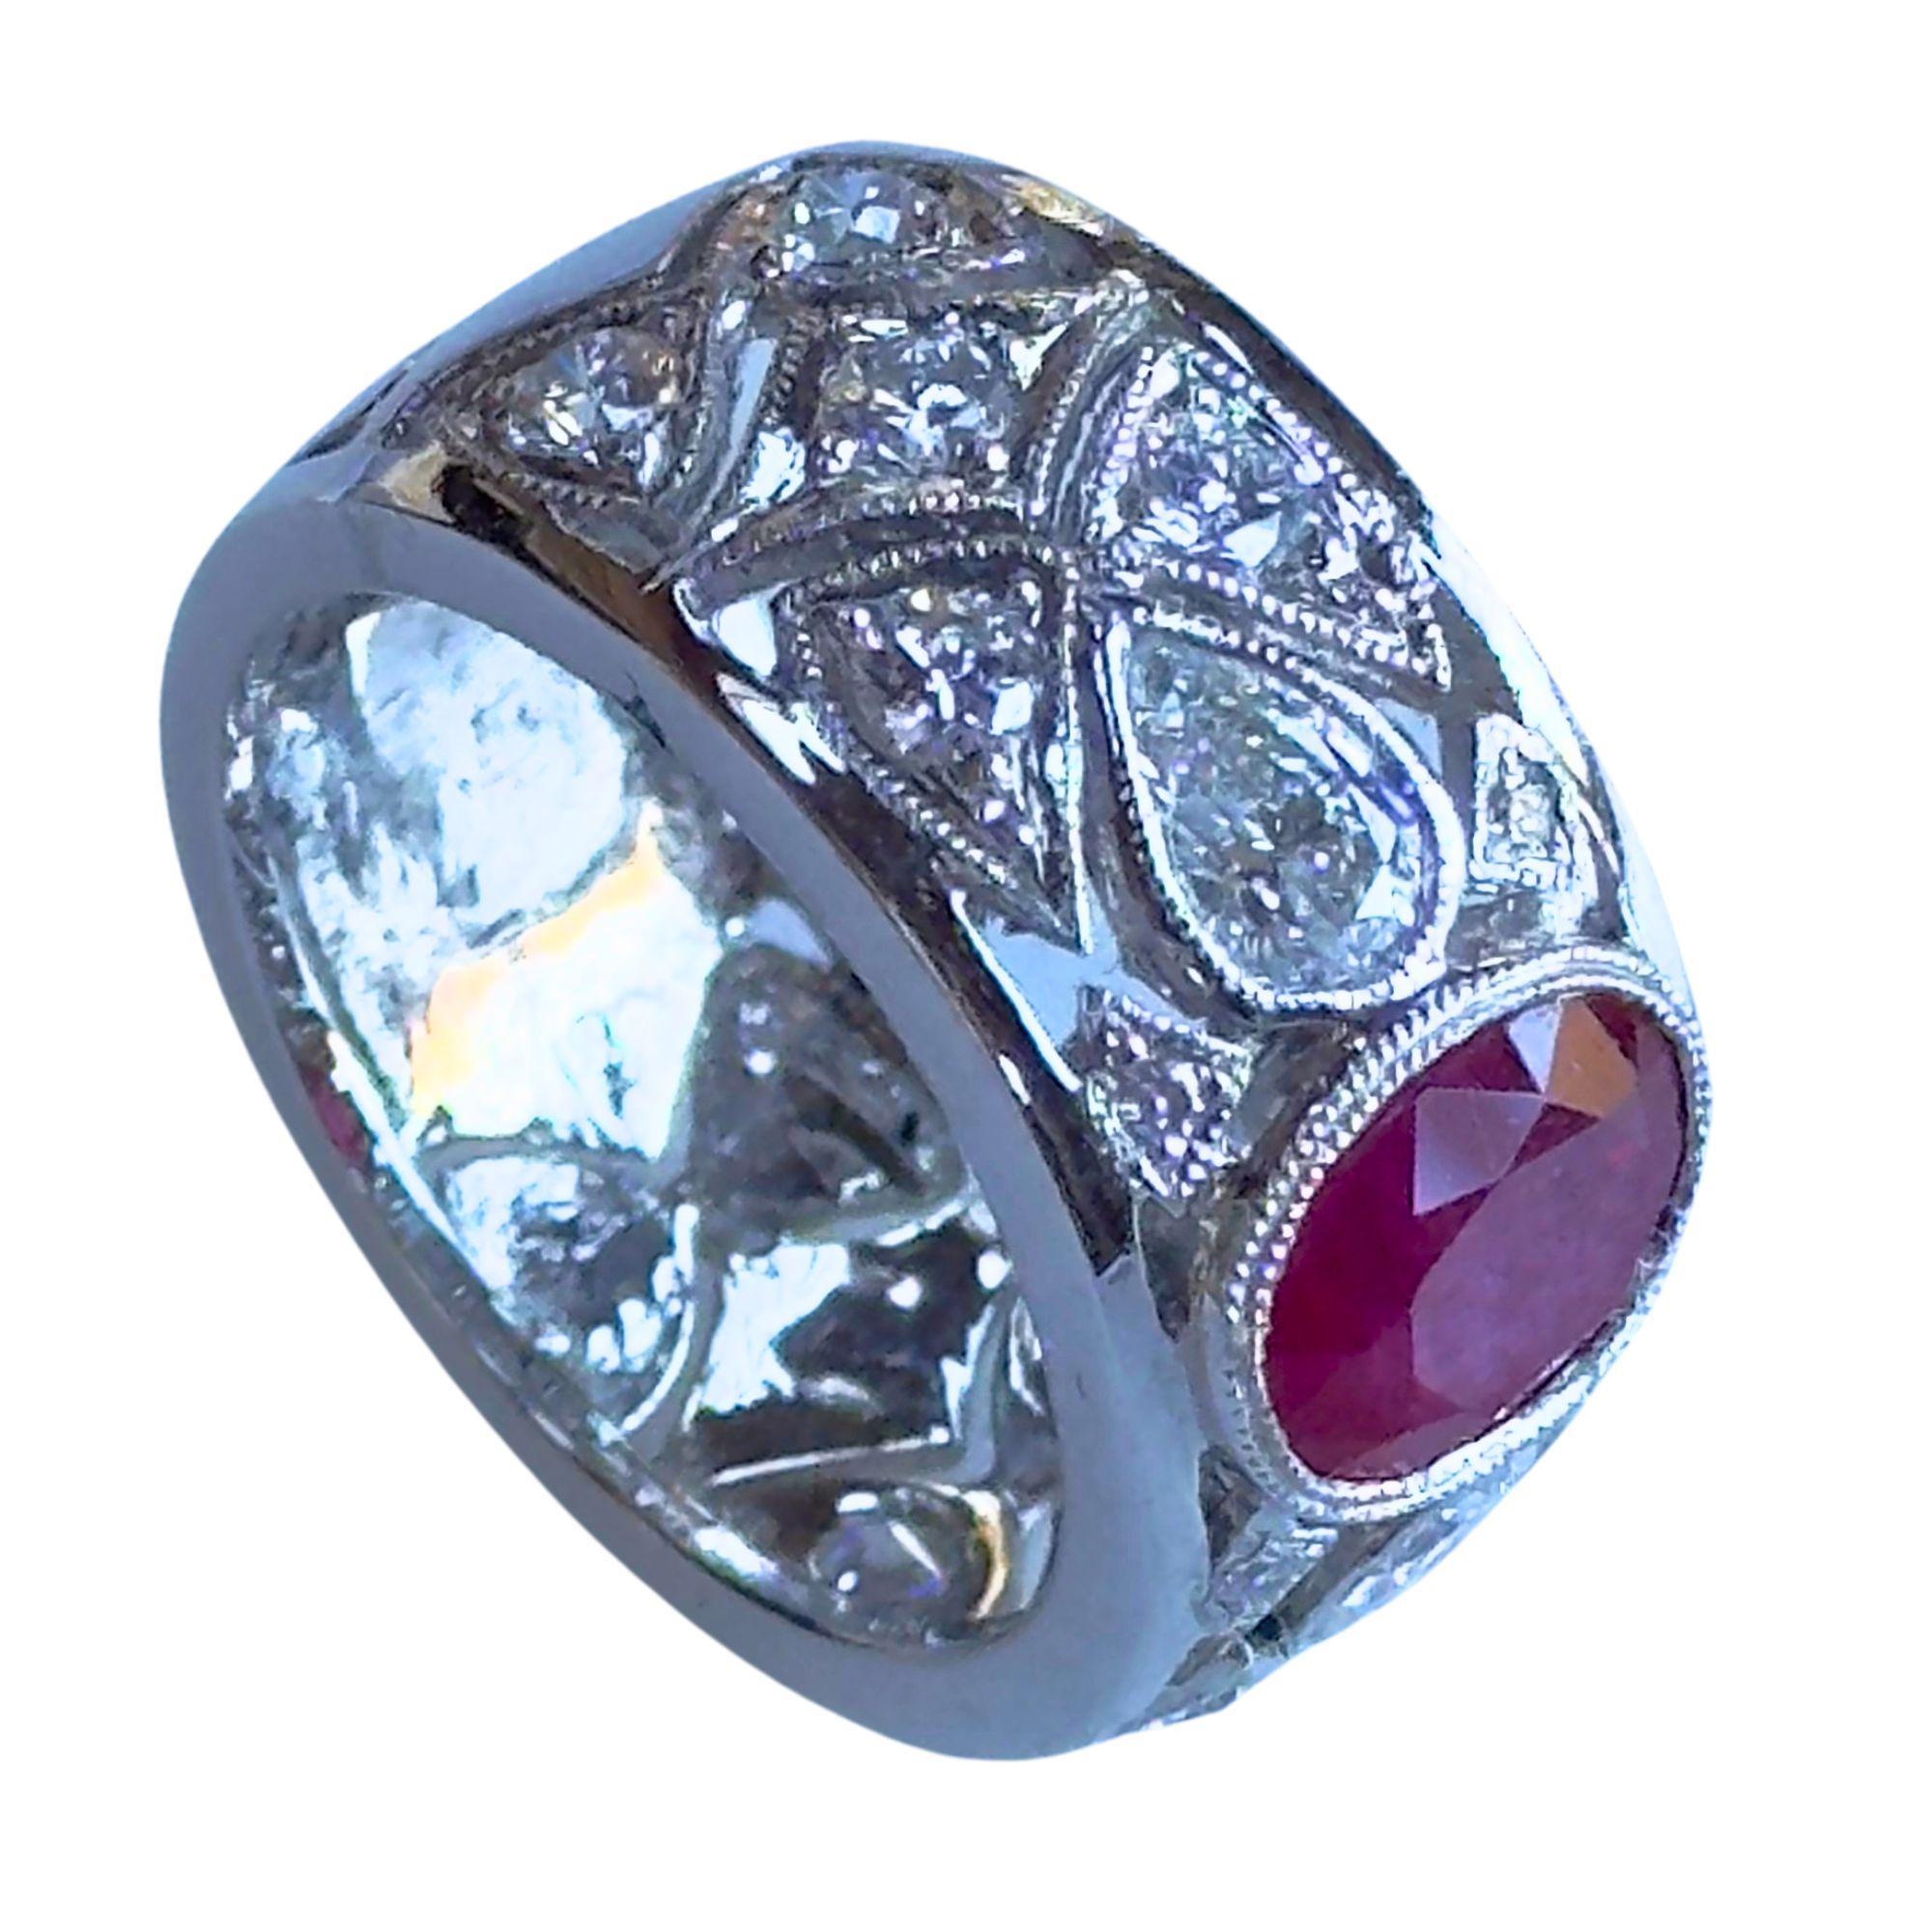 Verleihen Sie Ihrer Schmucksammlung einen Hauch von Eleganz mit diesem breiten Ring mit 18 Karat Diamanten und Rubinen. Er ist aus 18 Karat Weißgold gefertigt und besteht aus 1,18 Karat funkelnden Diamanten und einem 2,04 Karat schweren Rubin in der